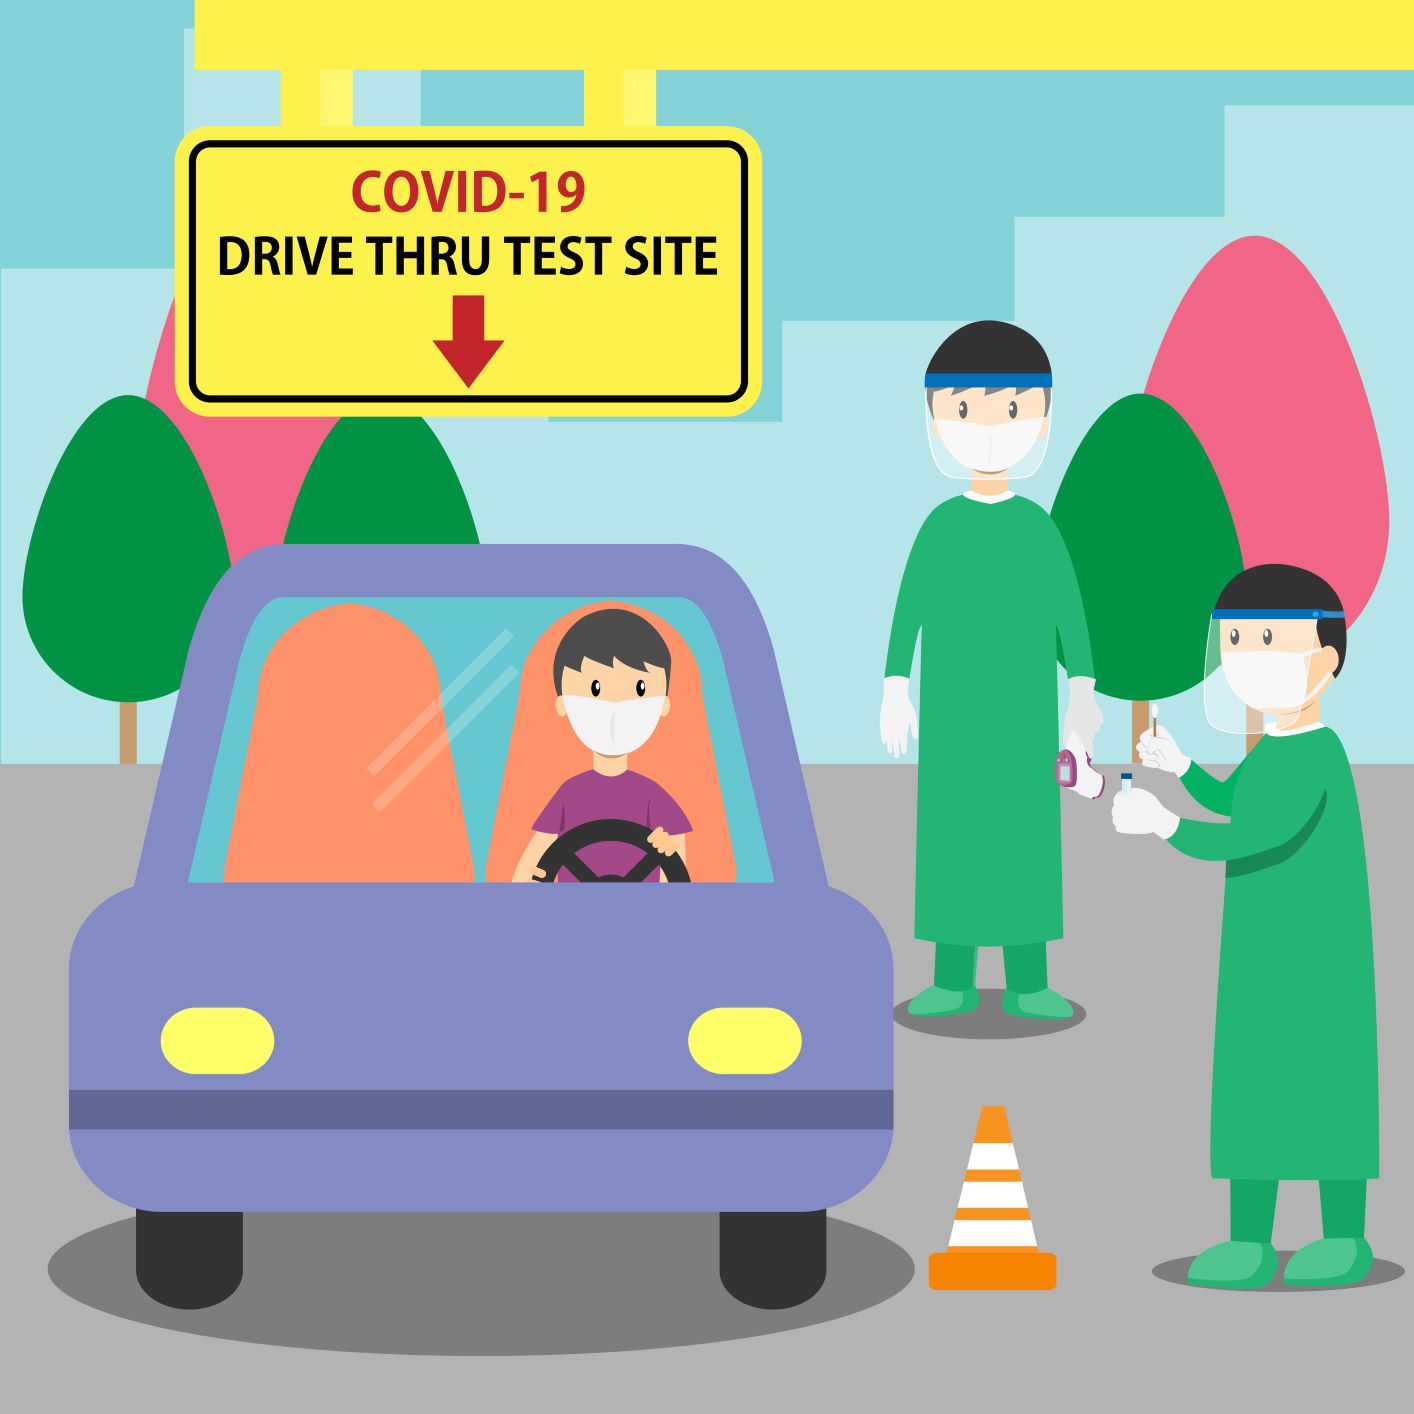 Drive through test